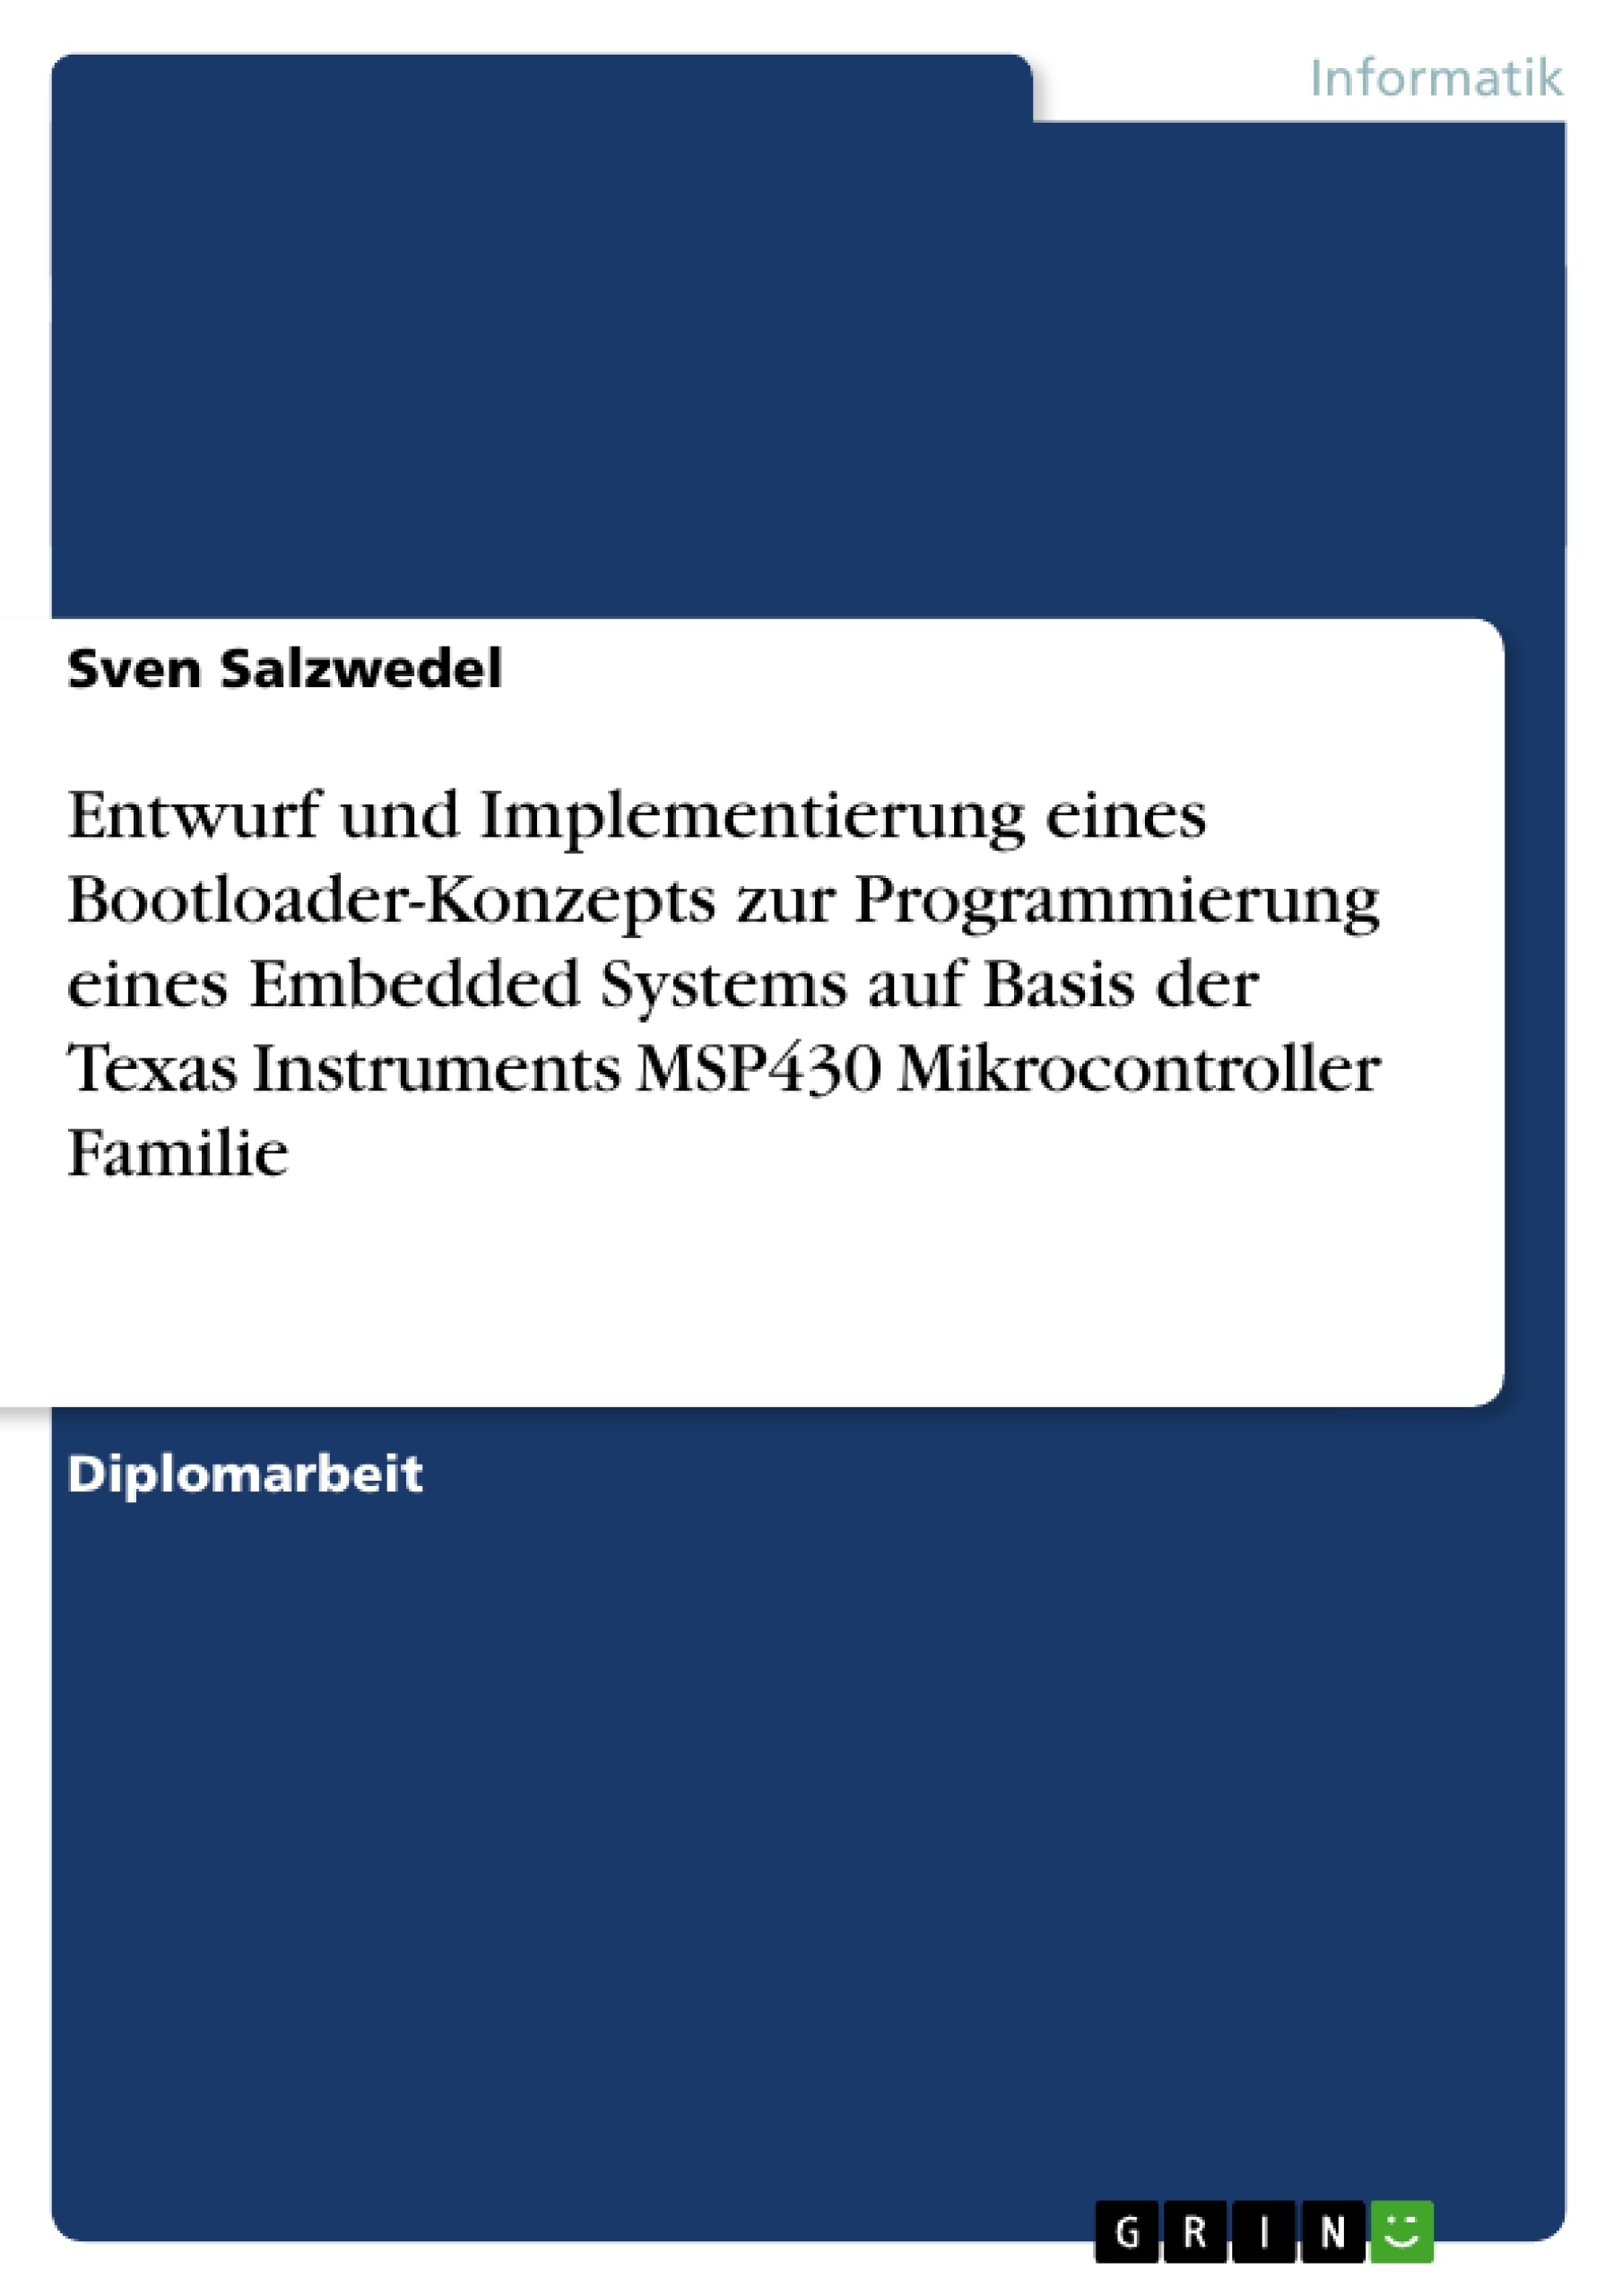 Title: Entwurf und Implementierung eines Bootloader-Konzepts zur Programmierung eines Embedded Systems auf Basis der Texas Instruments MSP430 Mikrocontroller Familie